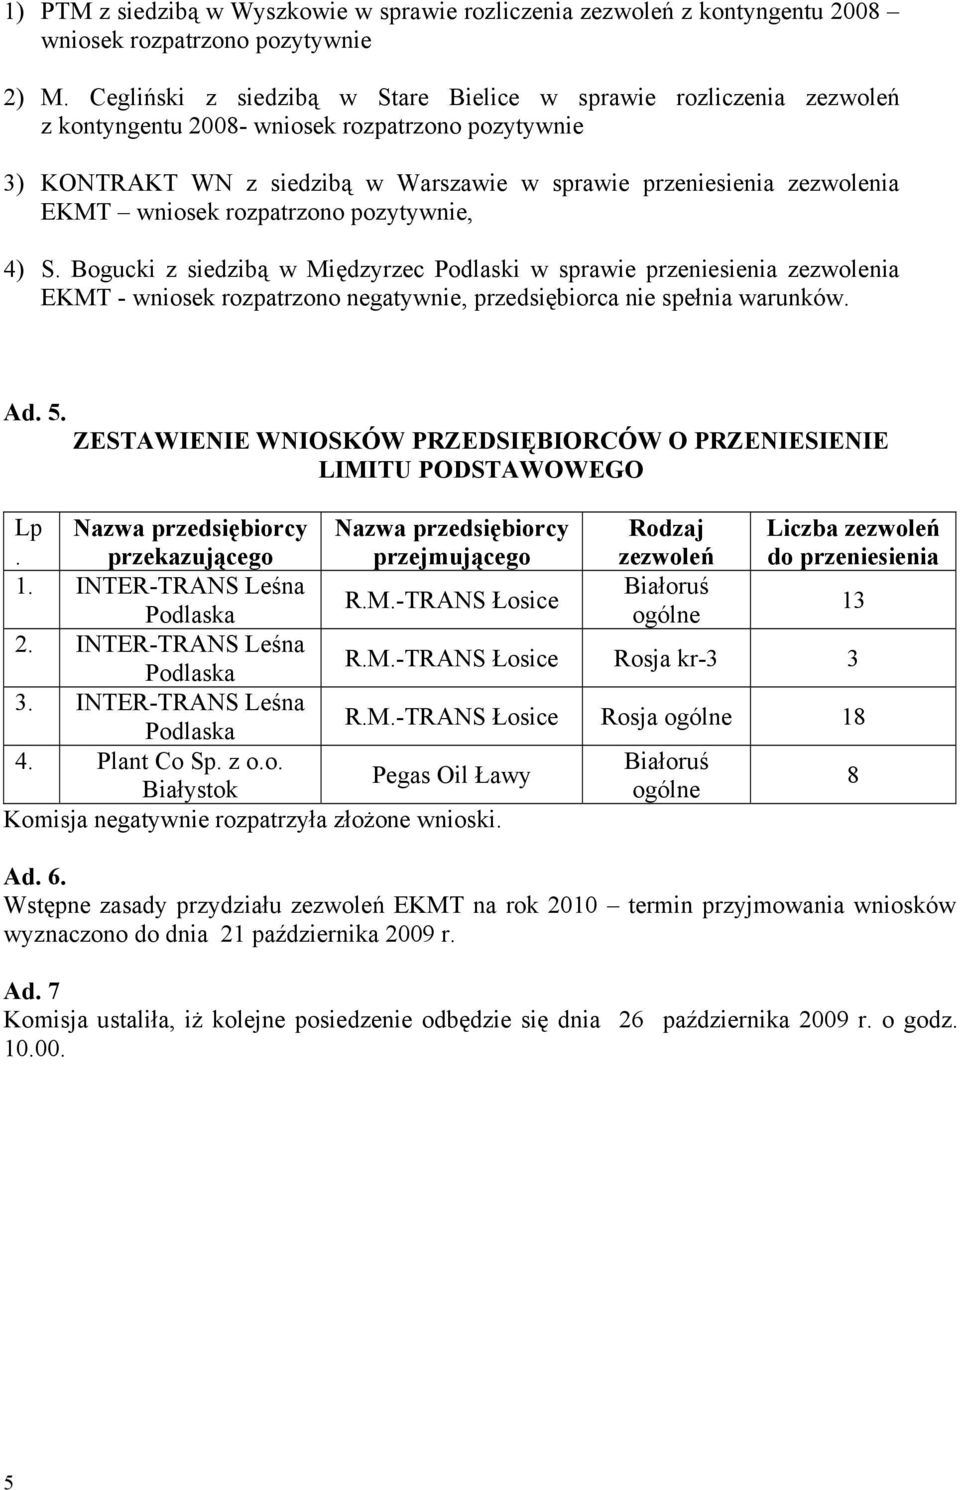 wniosek rozpatrzono pozytywnie, 4) S. Bogucki z siedzibą w Międzyrzec Podlaski w sprawie przeniesienia zezwolenia EKMT - wniosek rozpatrzono negatywnie, przedsiębiorca nie spełnia warunków. Ad. 5.